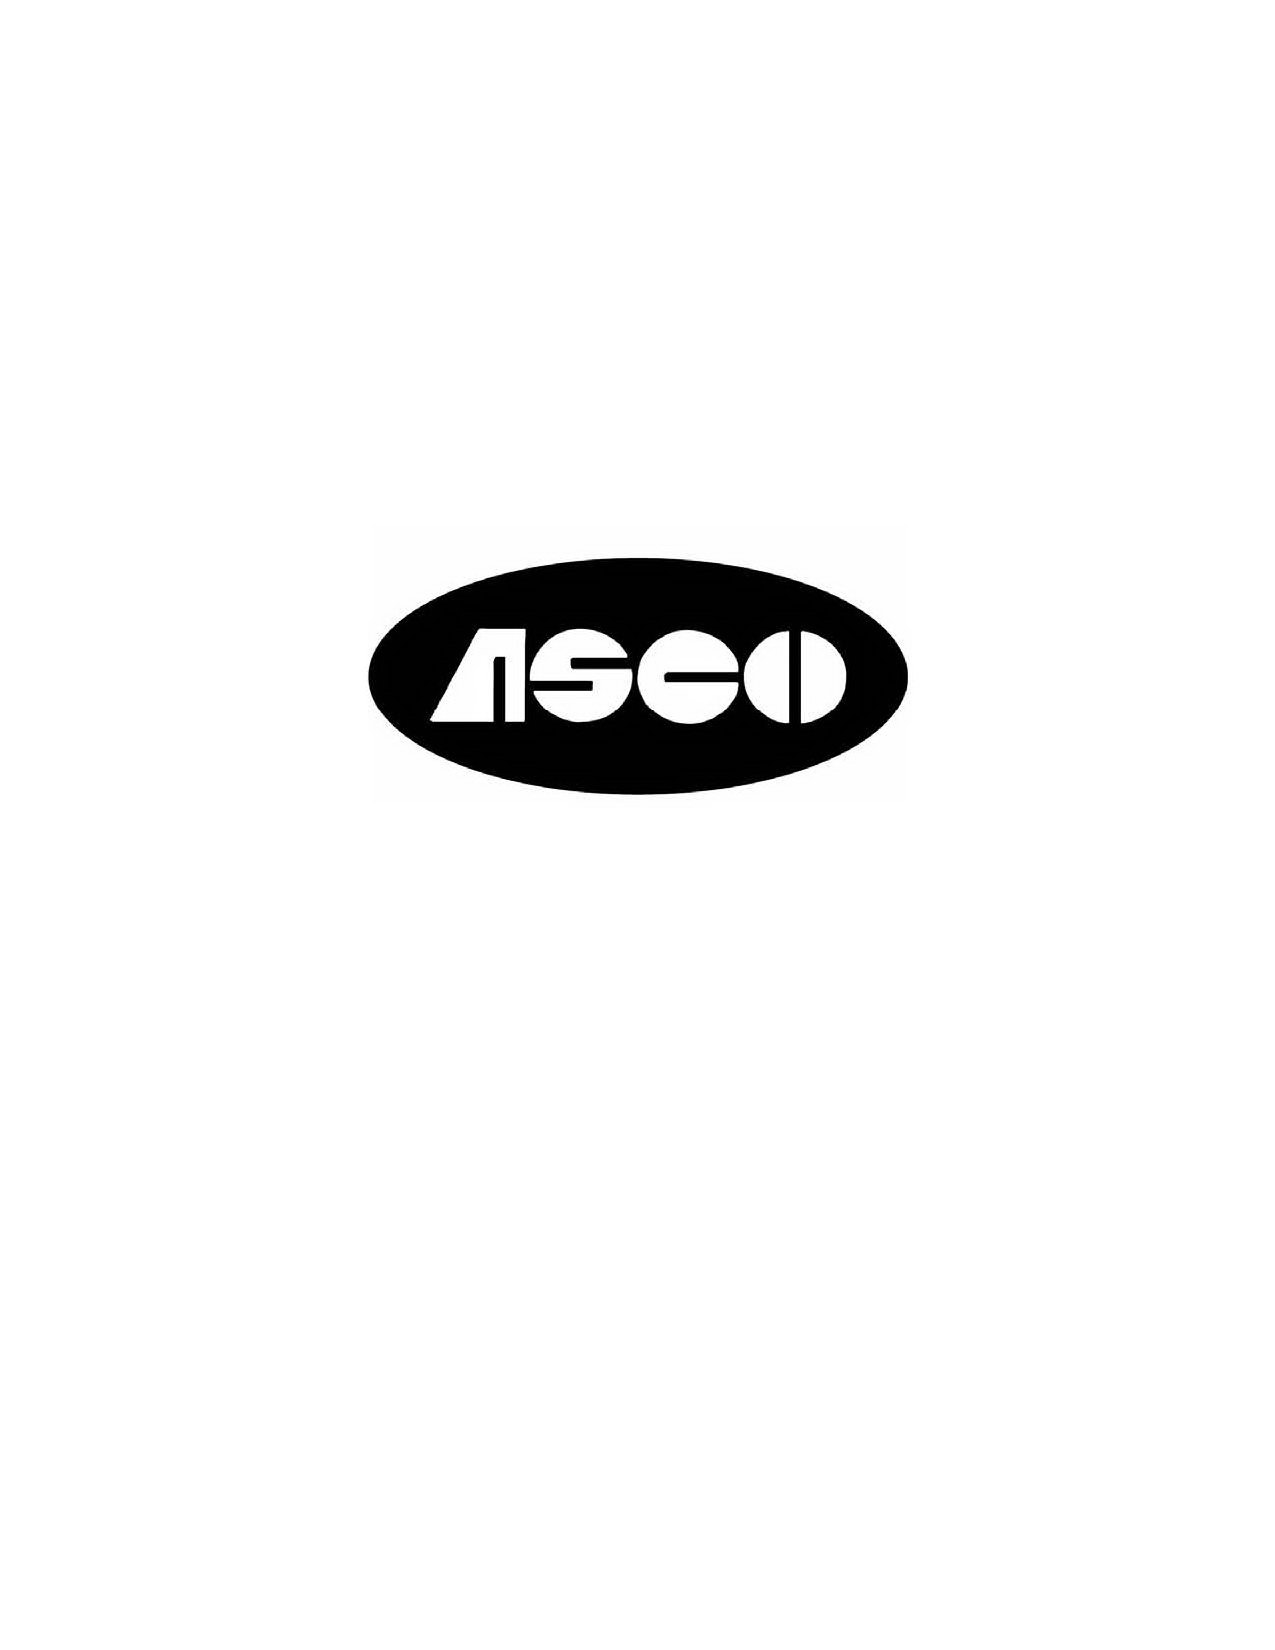 ASCO Aisin Seiki Co., Ltd. Trademark Registration